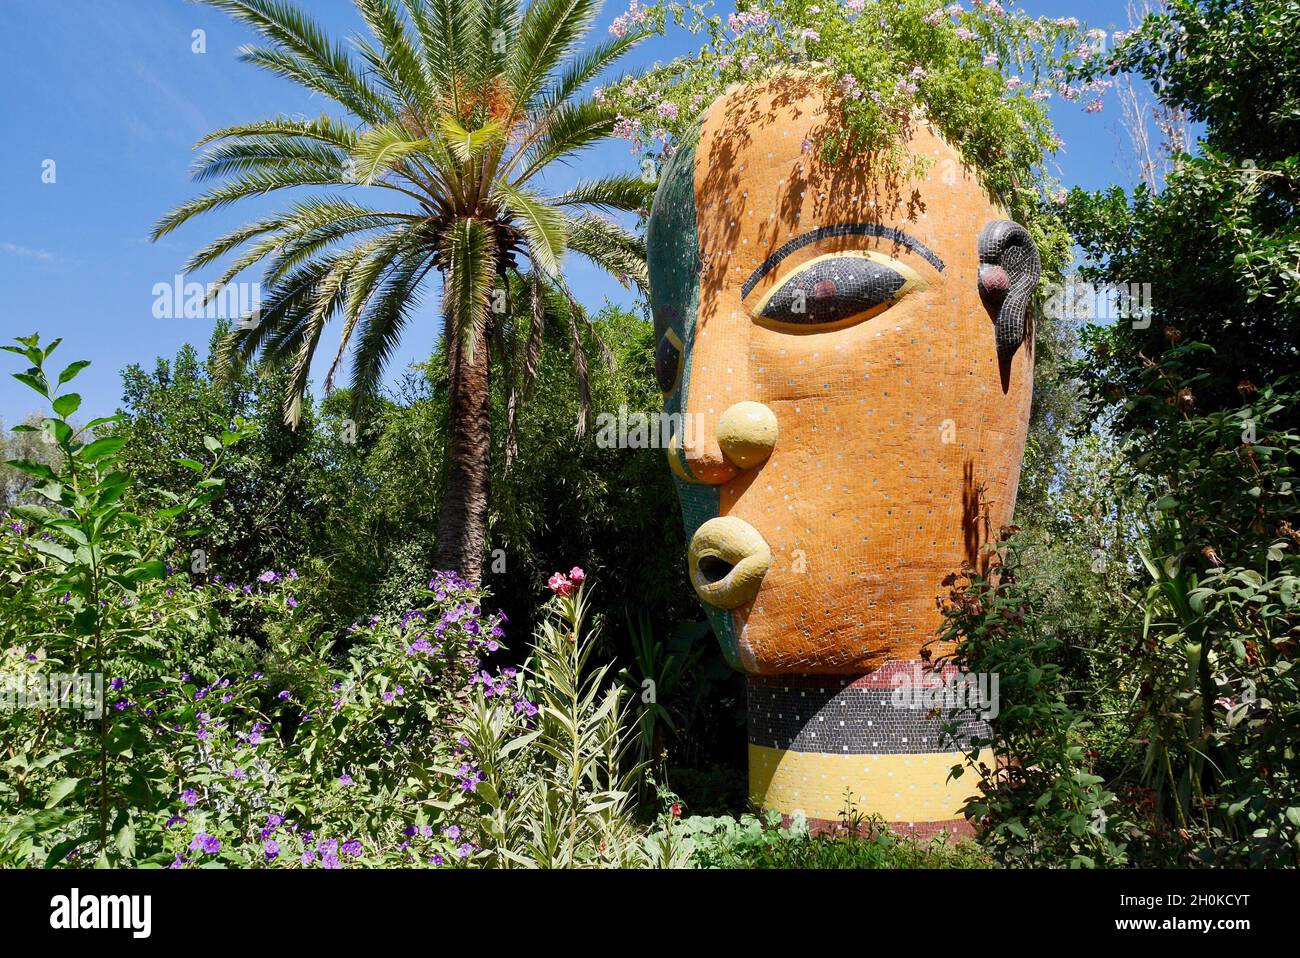 Marrakesch, Marokko, 24.04.2016. Anima, Andre Hellers phantasievoller botanischer Garten. Bunte Skulptur des Kopfes einer Frau. Stockfoto